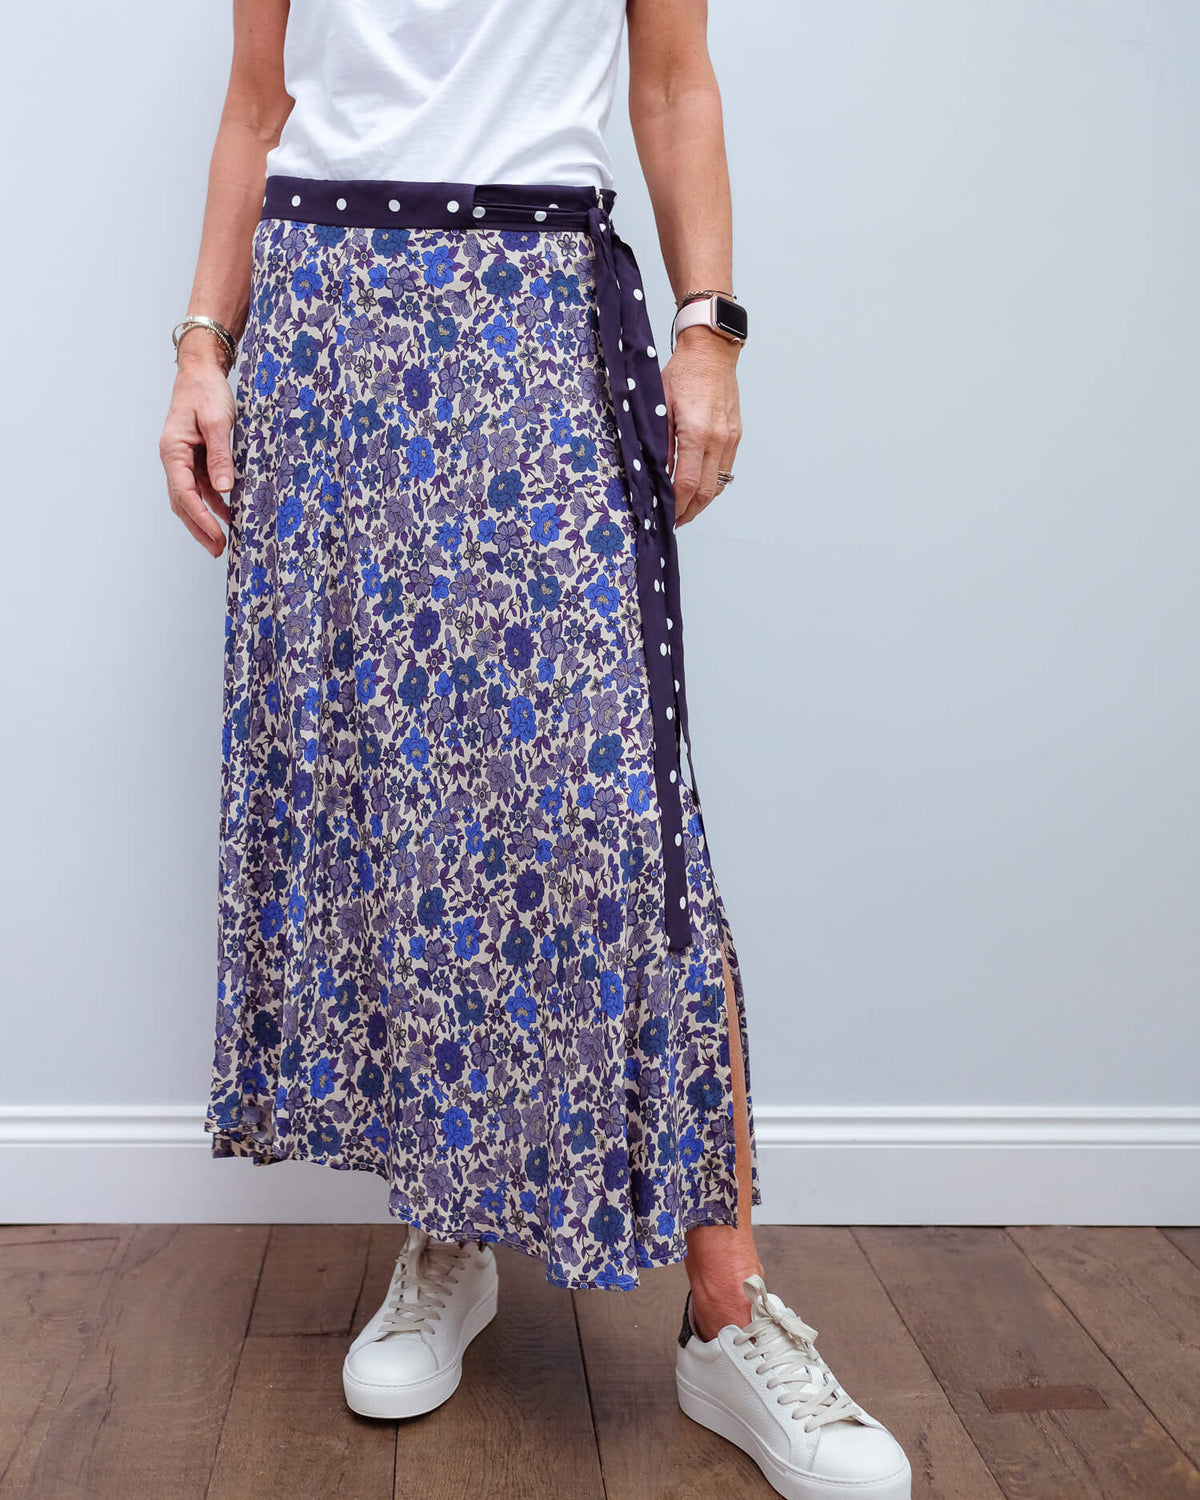 V Olive skirt in bluebell